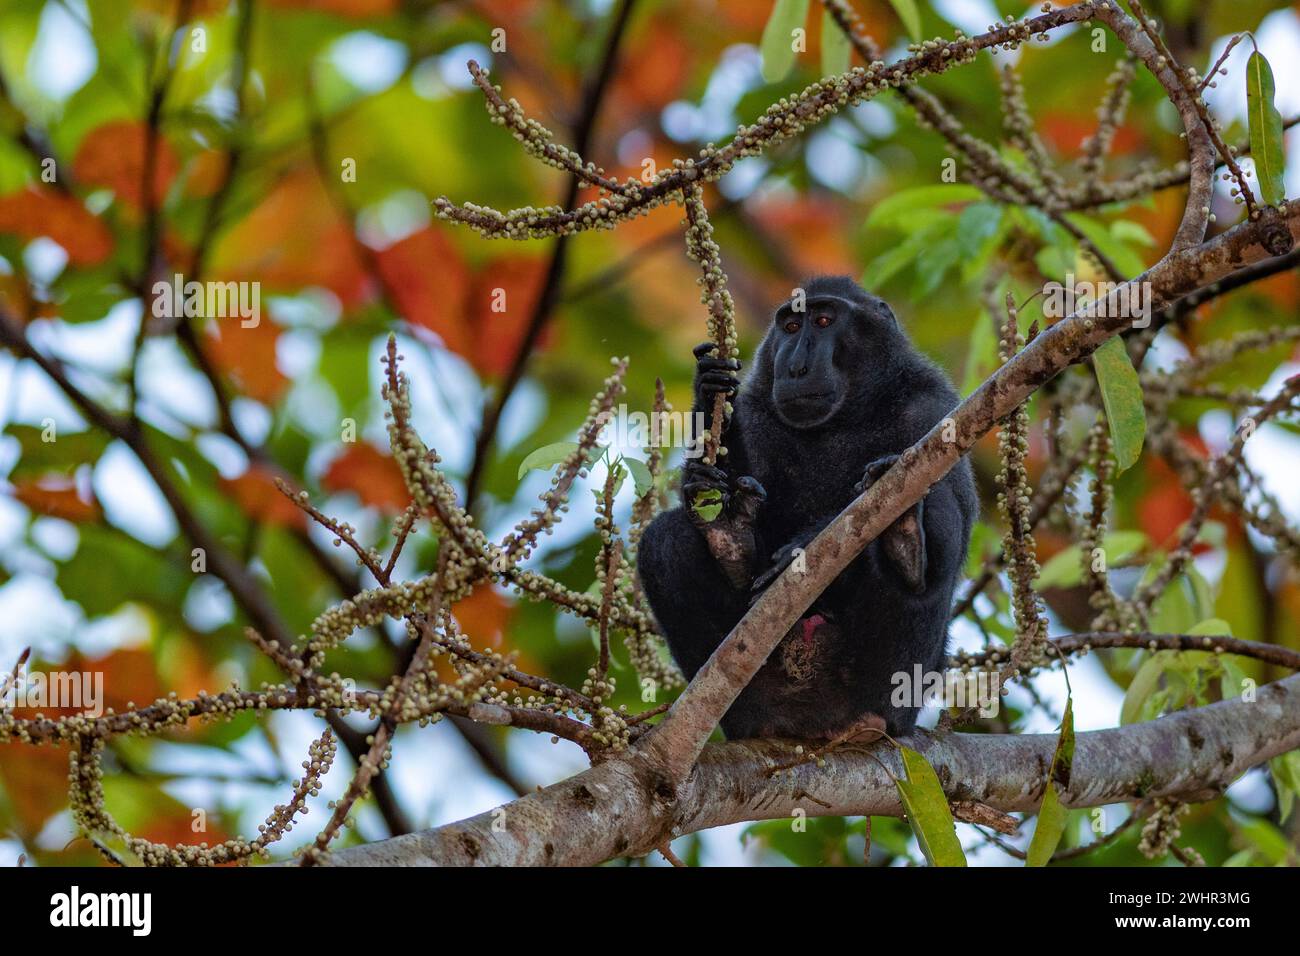 Macaco nero crestato (Macaca nigra) che si nutre di frutta nella riserva naturale di Tangkoko, nel nord di Sulawesi, Indonesia. Foto Stock